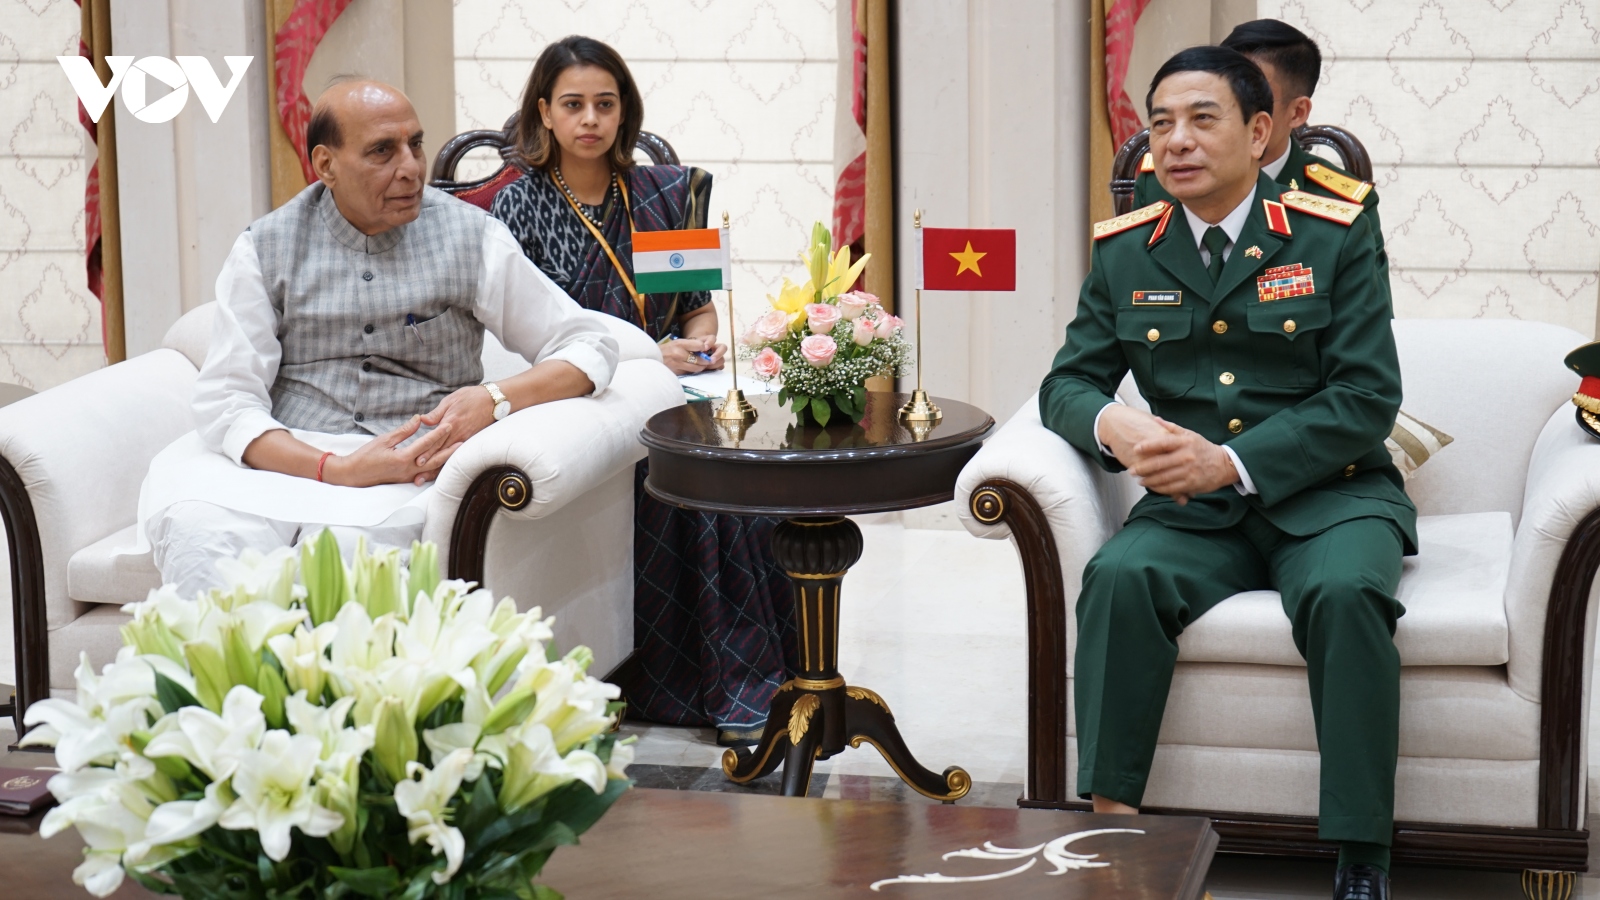 Hợp tác quốc phòng là 1 trụ cột quan trọng trong quan hệ Việt Nam- Ấn Độ